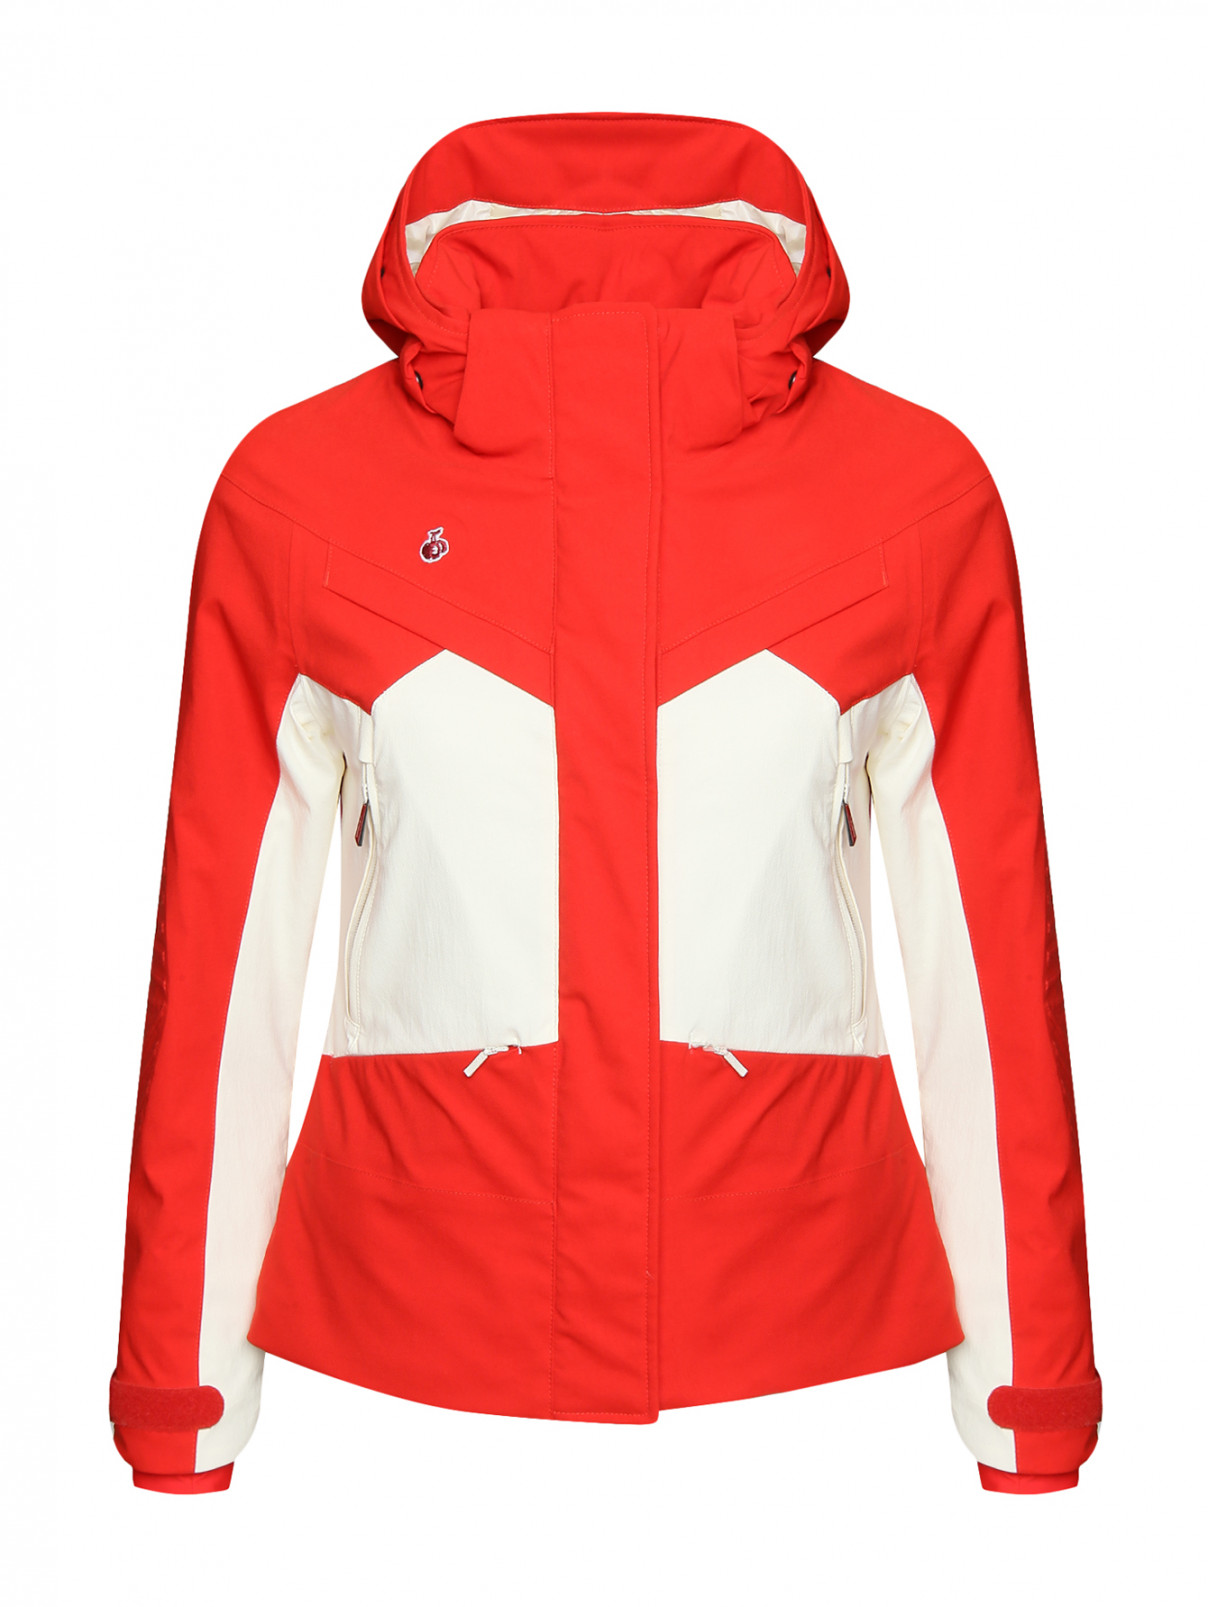 Куртка горнолыжная с капюшоном BOSCO  –  Общий вид  – Цвет:  Красный